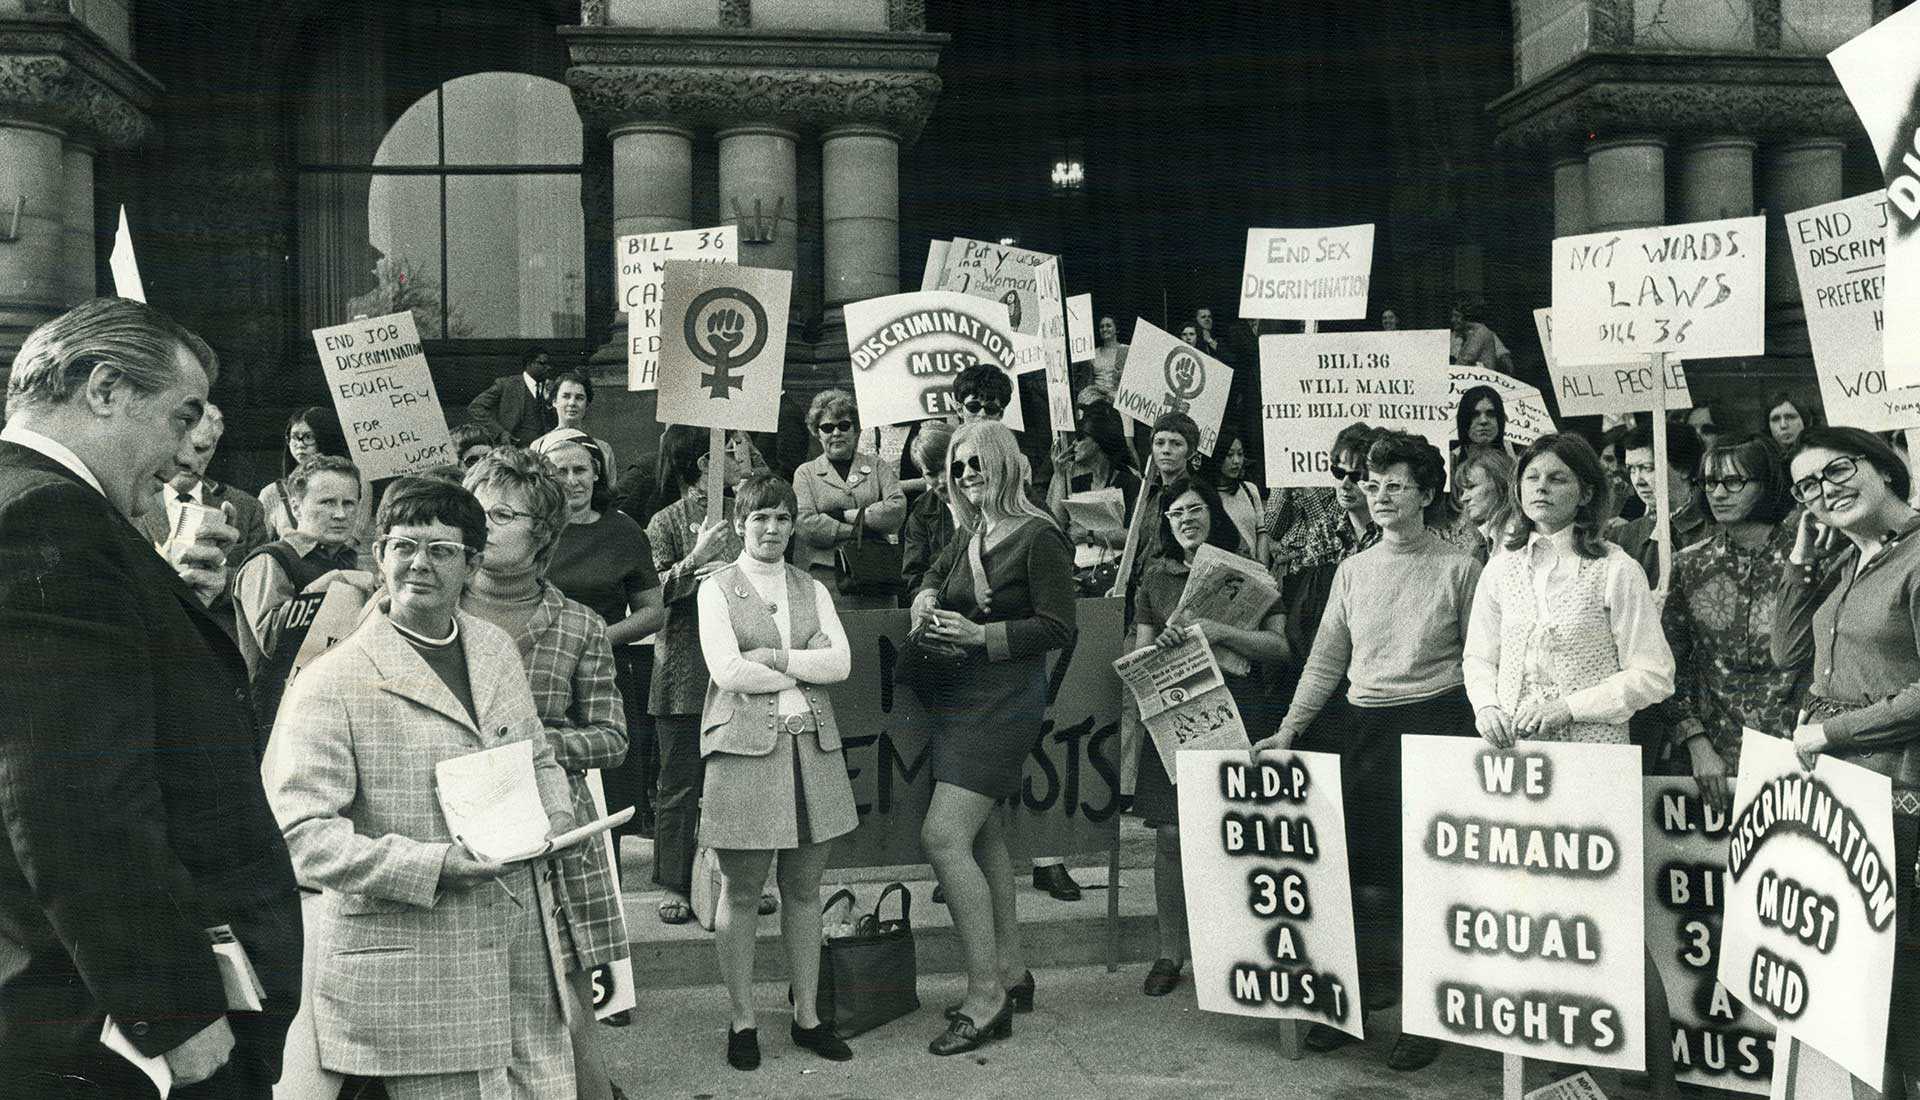 Des membres de la Voix des femmes manifestent à Queen’s Park en avril 1970 pour demander l’appui d’un projet de loi visant à assurer aux femmes un salaire égal pour un travail égal. (Source : Dick Darrell/Toronto Star via Getty Images)